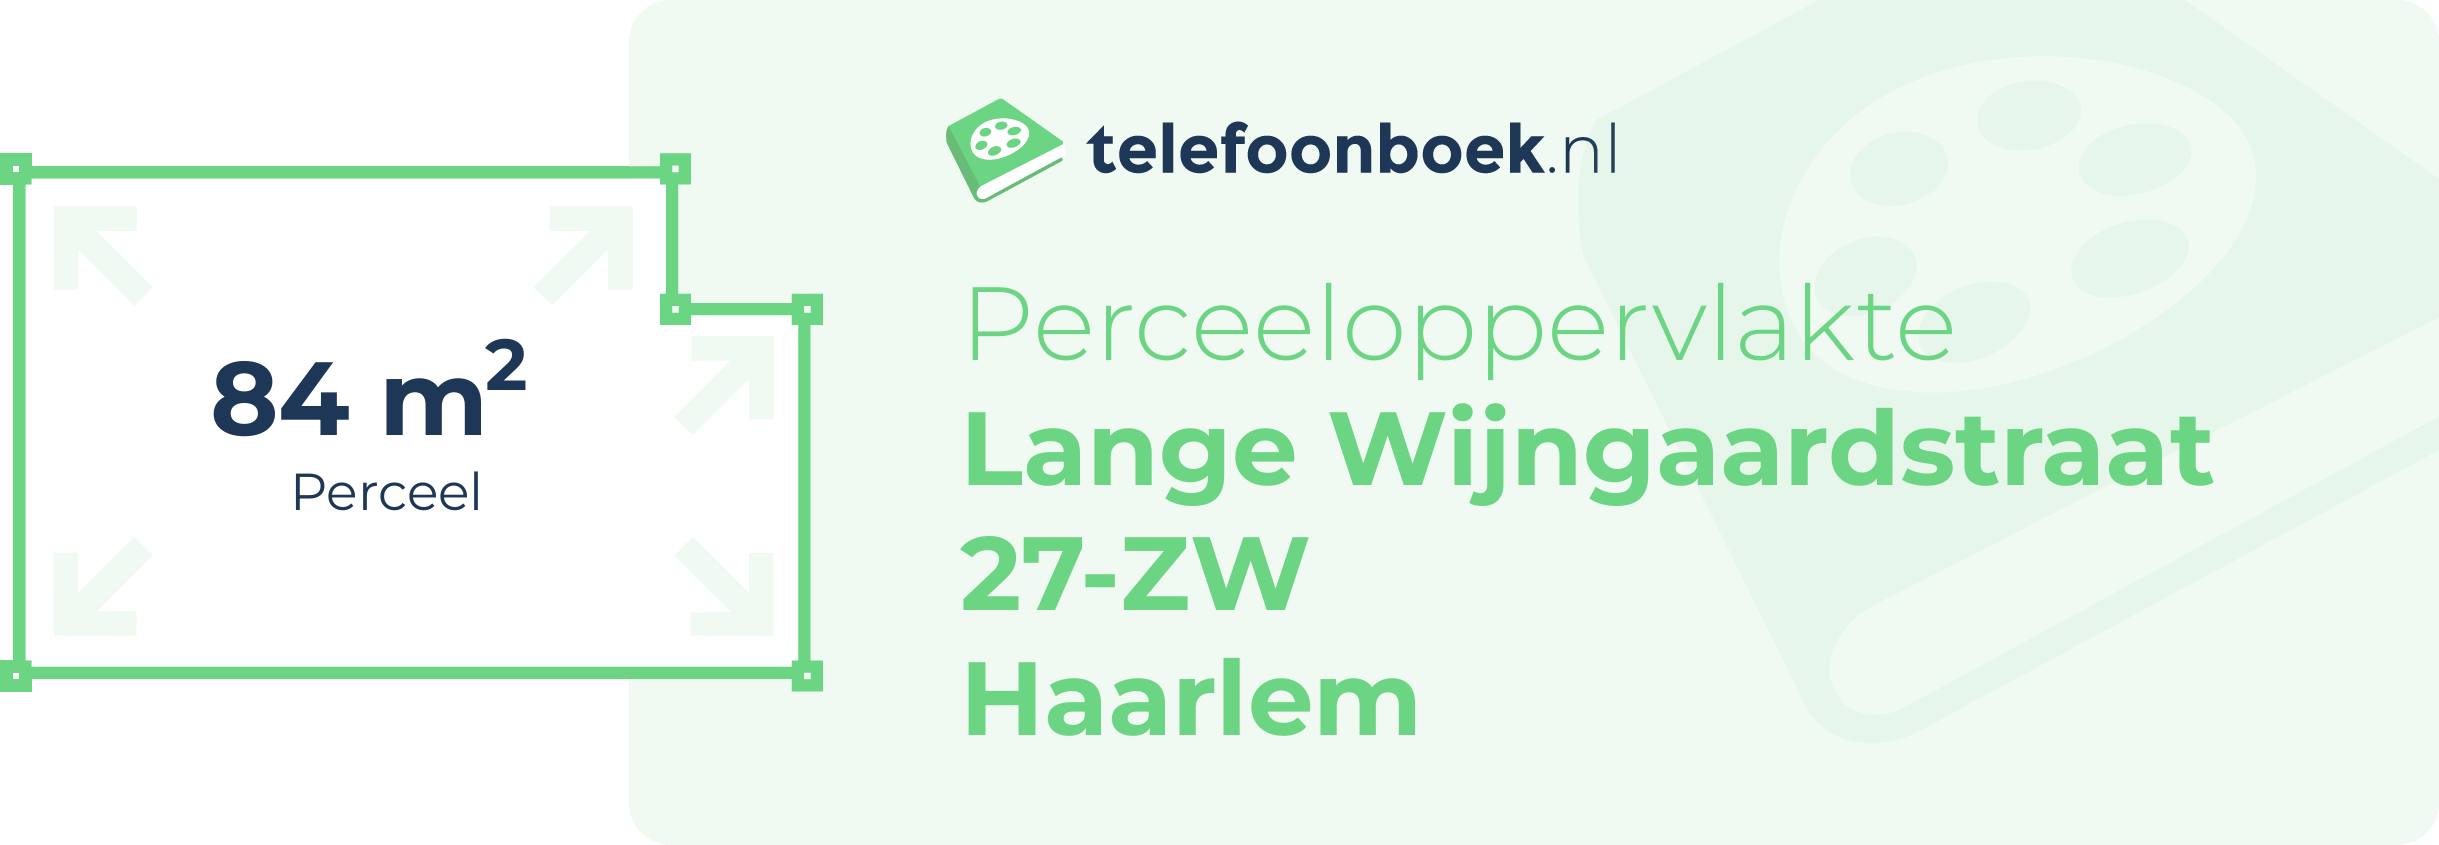 Perceeloppervlakte Lange Wijngaardstraat 27-ZW Haarlem